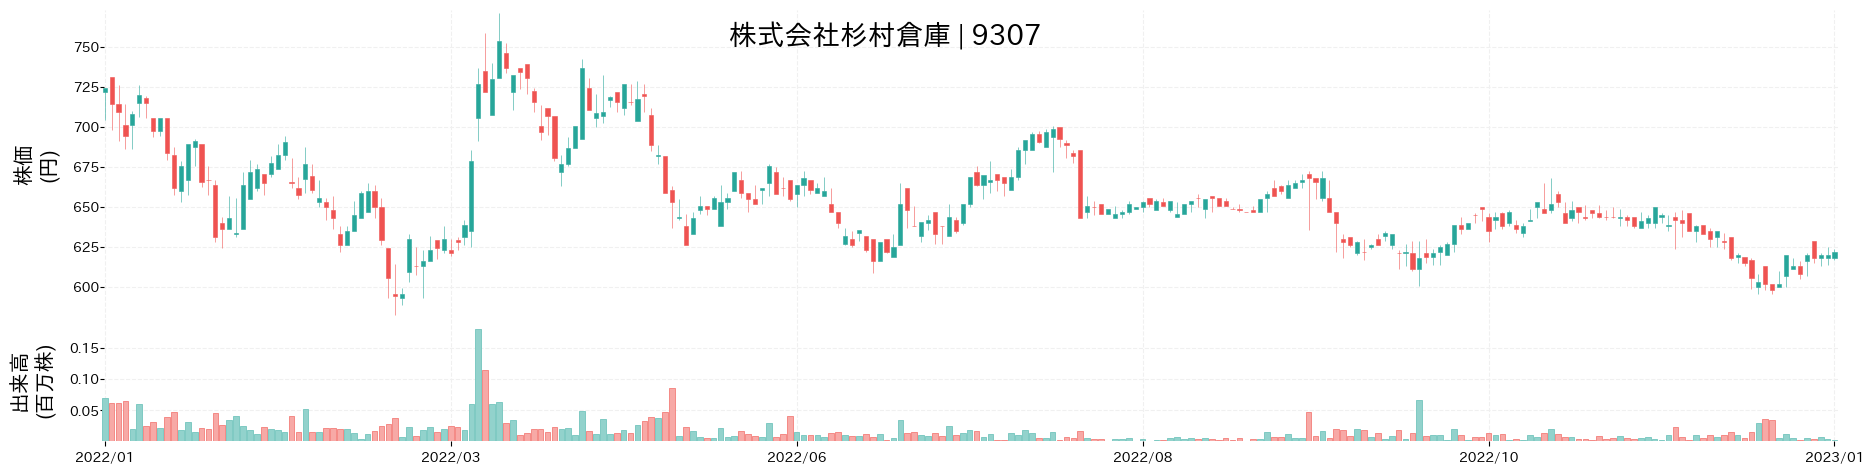 杉村倉庫の株価推移(2022)